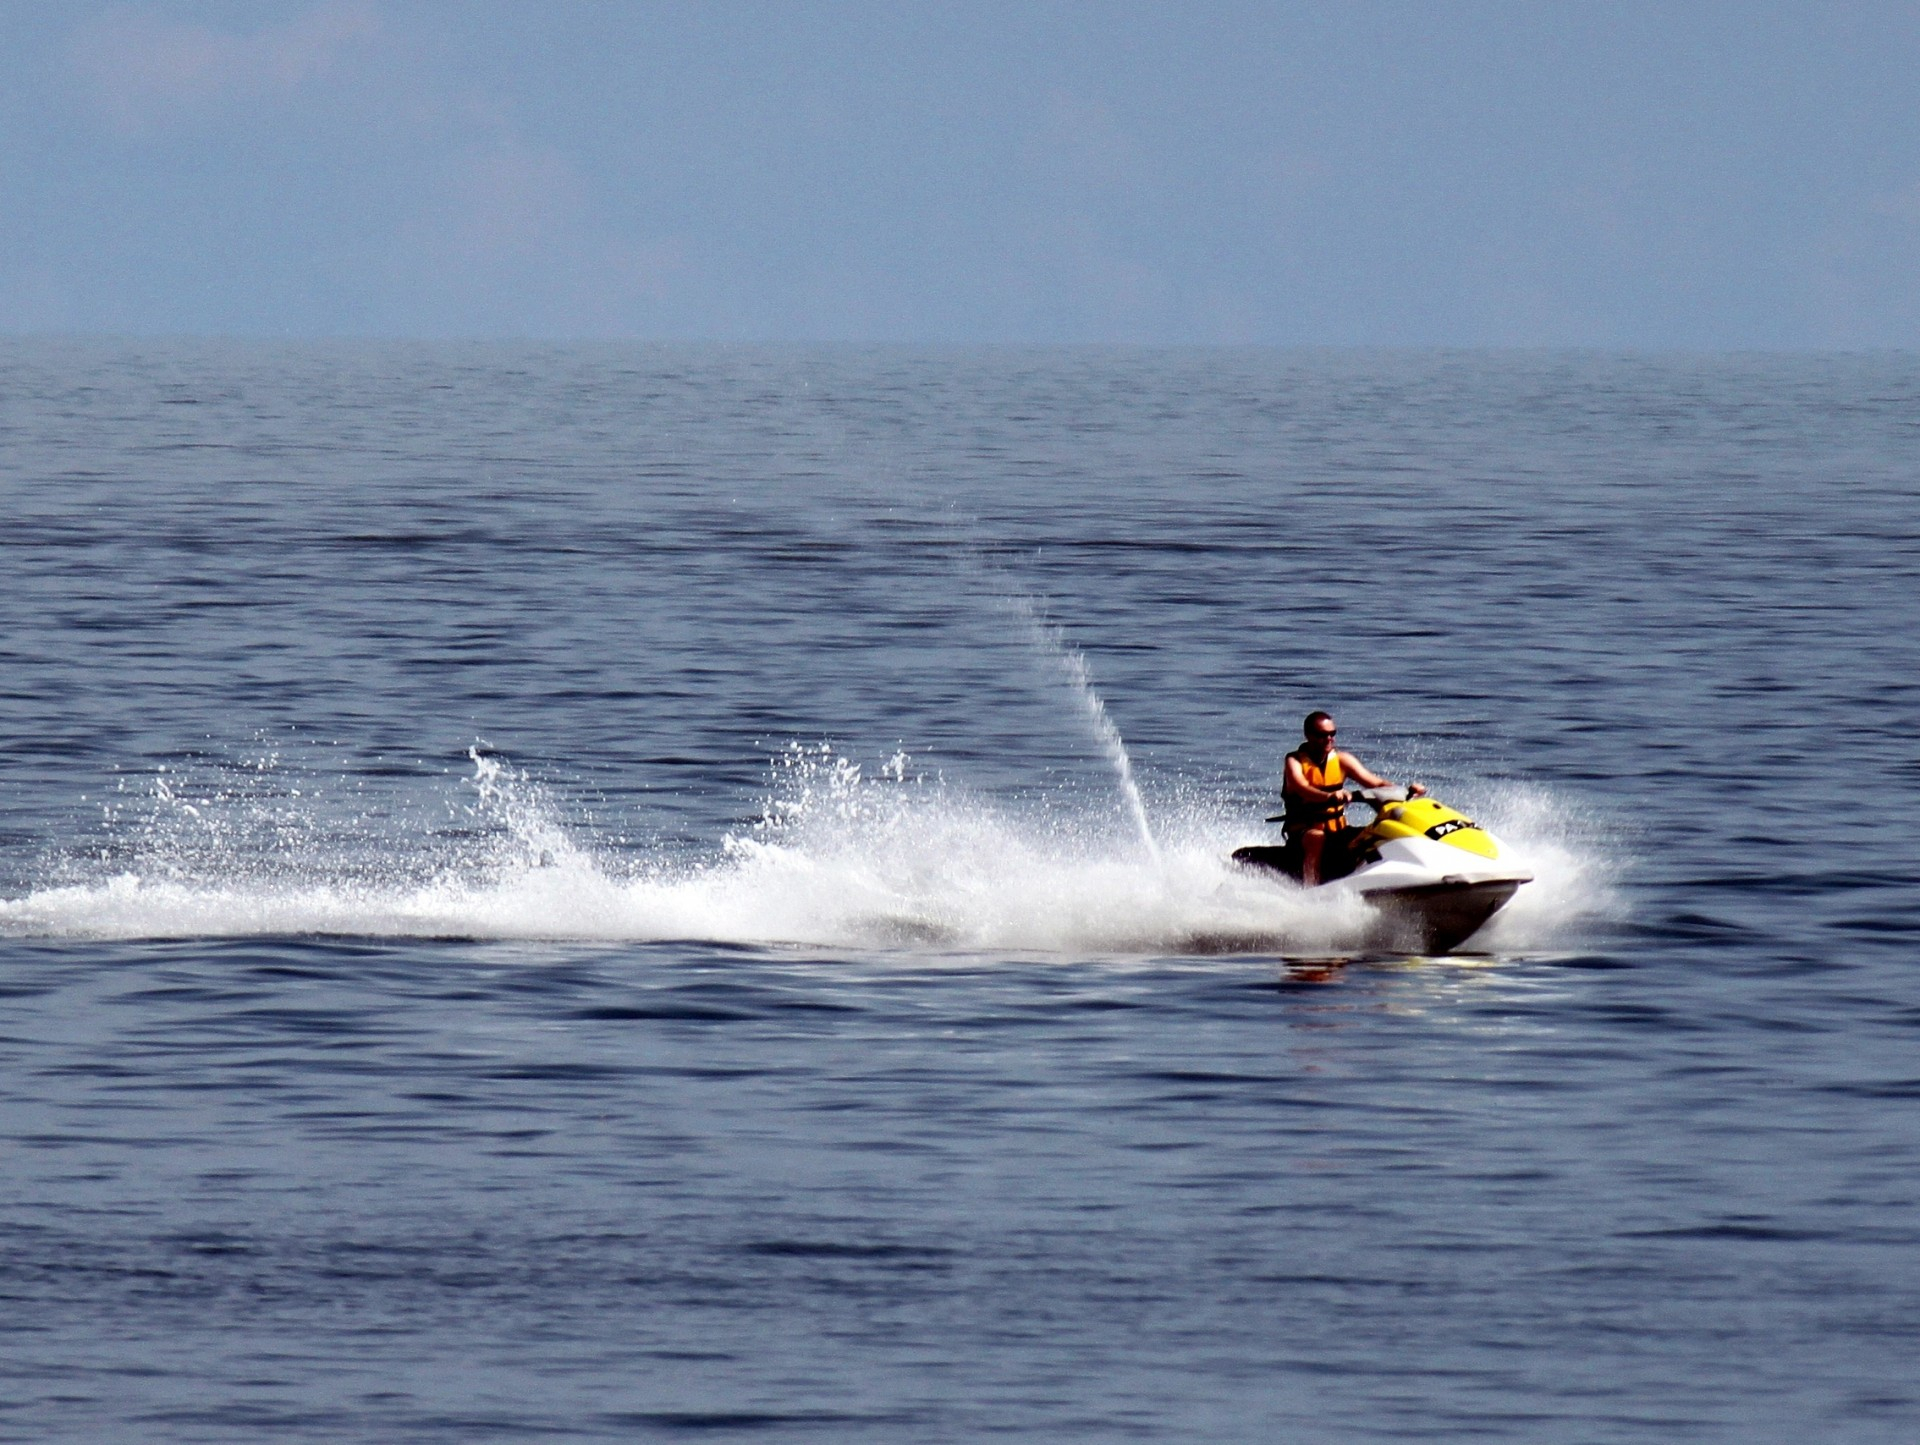 Водный мотоцикл на море